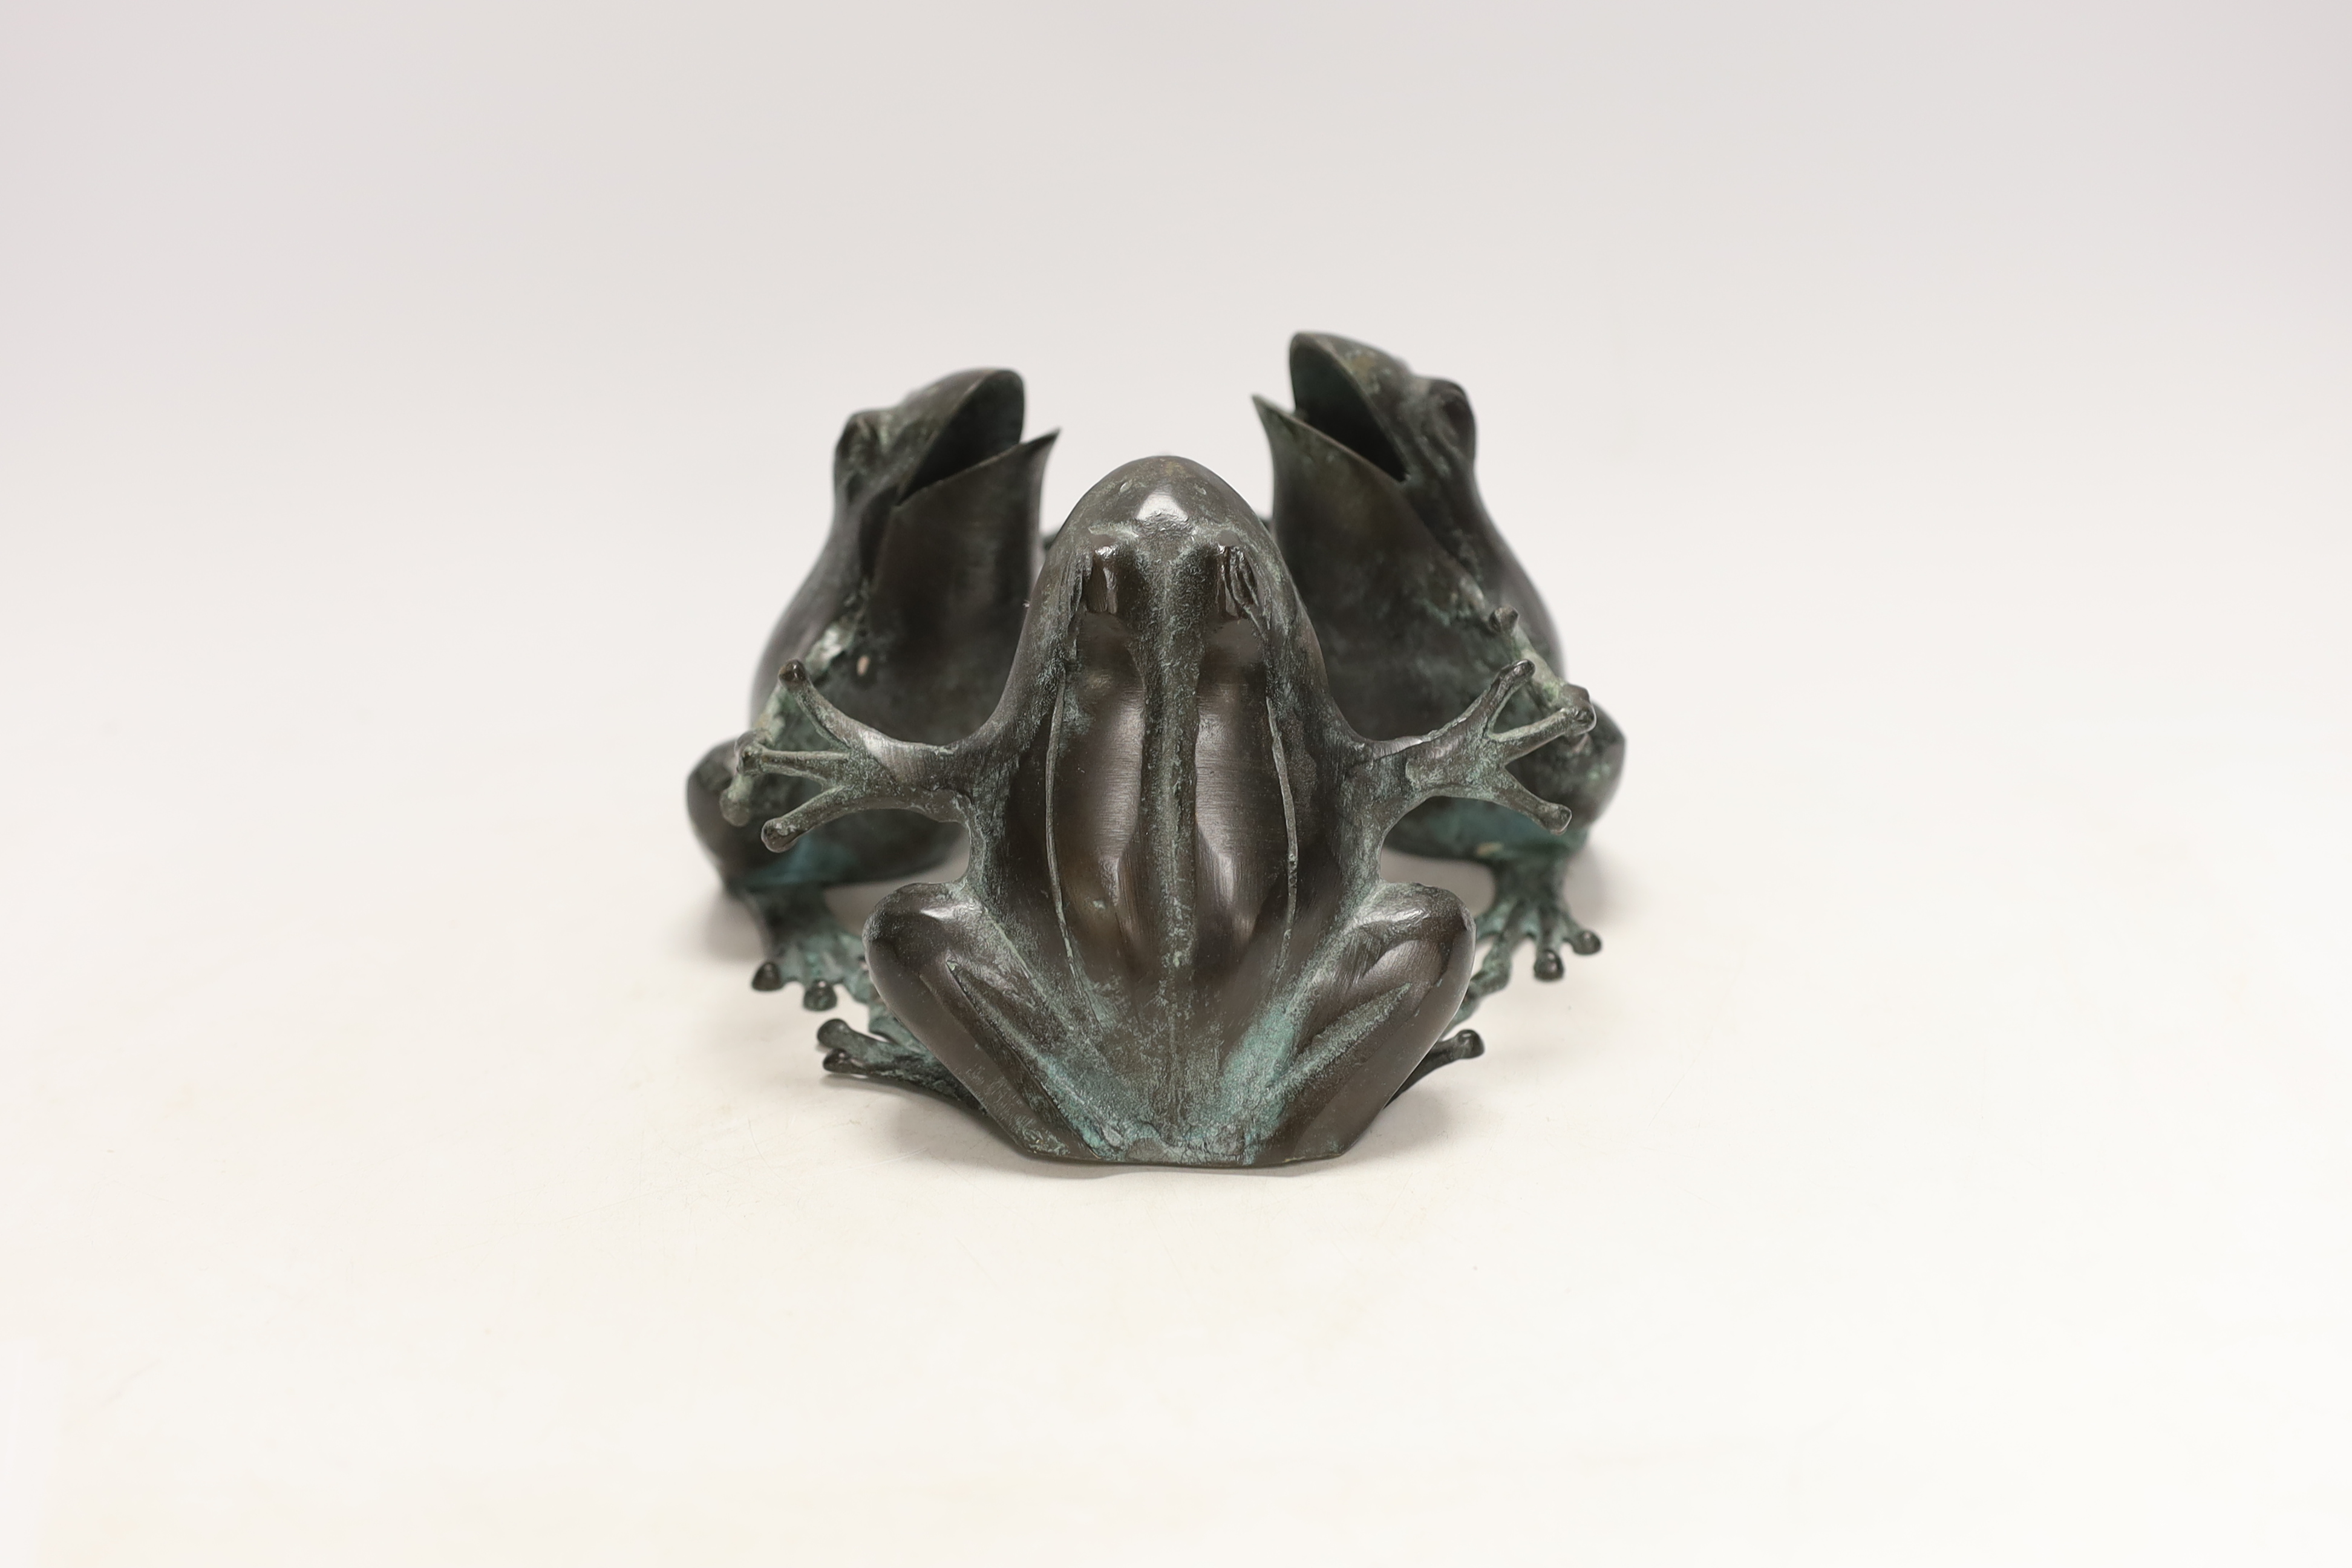 A bronze frog figure group, 18cm in diameter